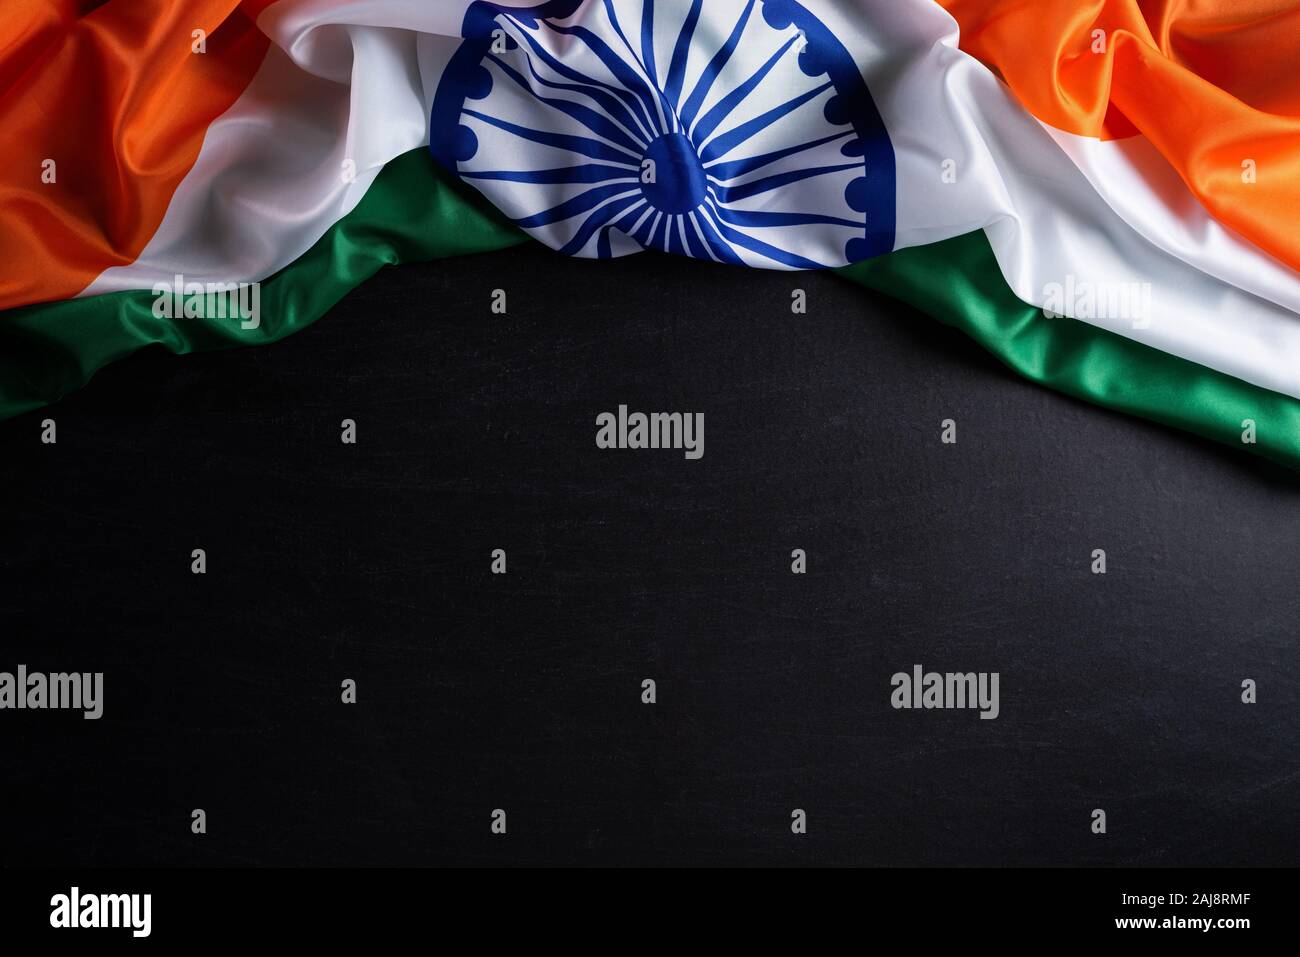 Indian Flag: Quốc kỳ Ấn Độ với ba màu sắc sáng tạo nên một nét đẹp tuyệt vời của đất nước này. Hãy xem bức ảnh về Indian Flag để cảm nhận sự tự hào của người dân Ấn Độ đối với quốc kỳ và cả ý nghĩa sâu sắc đằng sau các màu sắc đó.